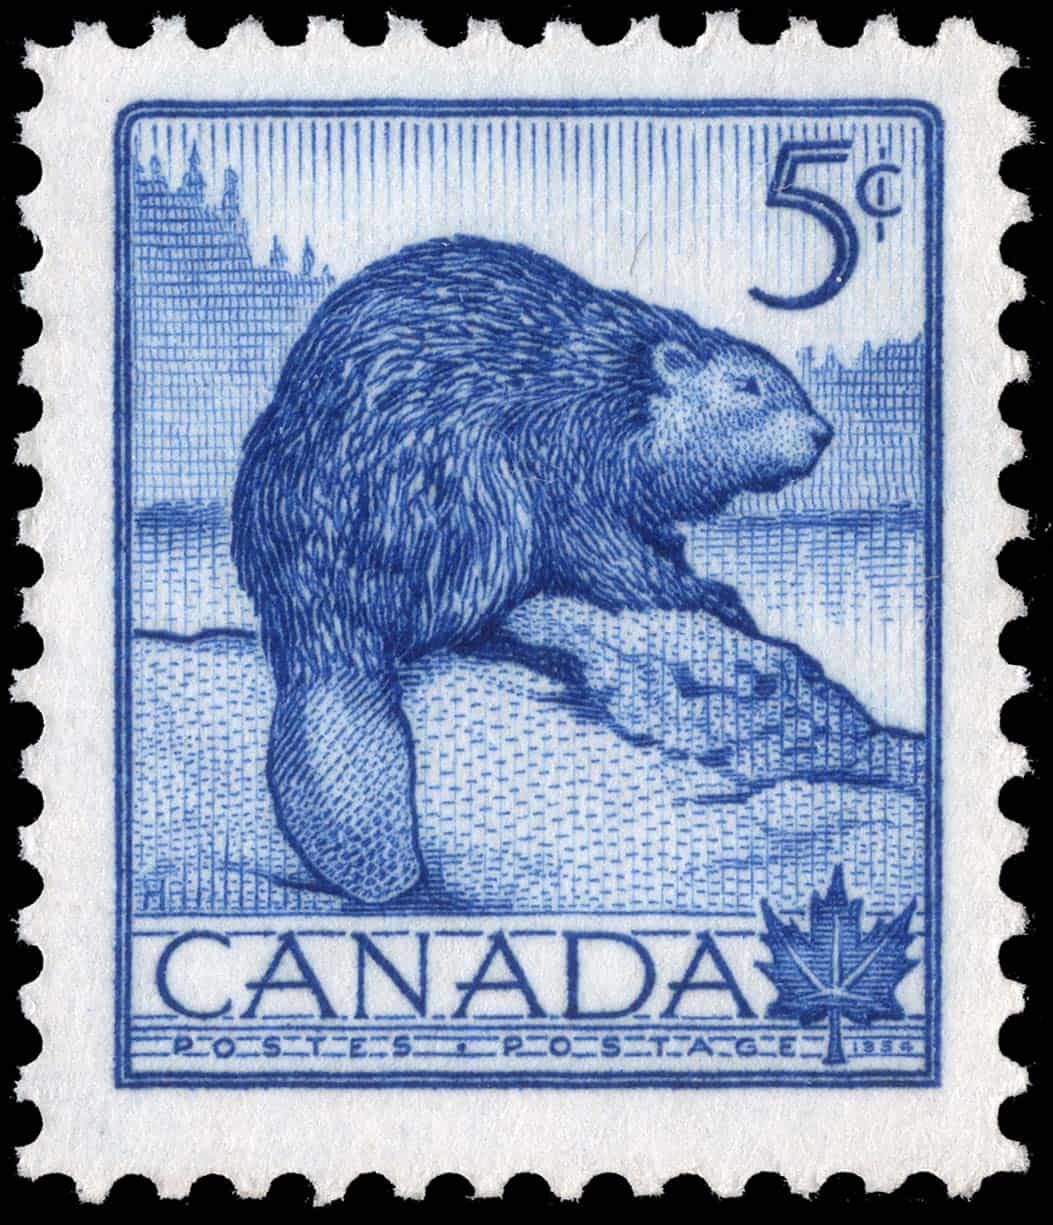 Der Biber ist als Nationaltier Kanadas auch auf Briefmarken verewigt worden, wie hier auf einer 5 Cent Marke aus dem Jahr 1954. Foto Canada Post